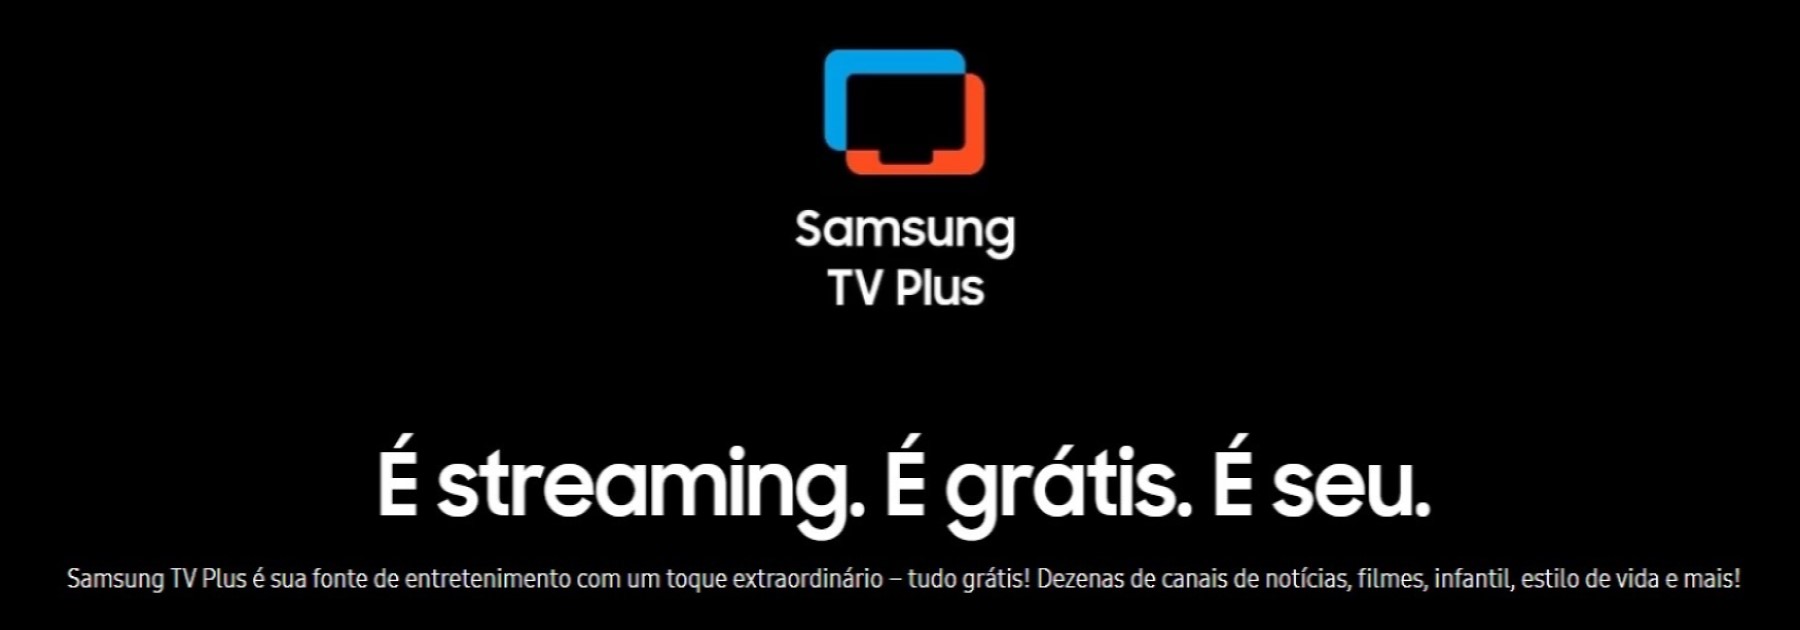 ¿Tienes un Samsung?  Disfruta de 80 canales gratuitos;  Ver lista